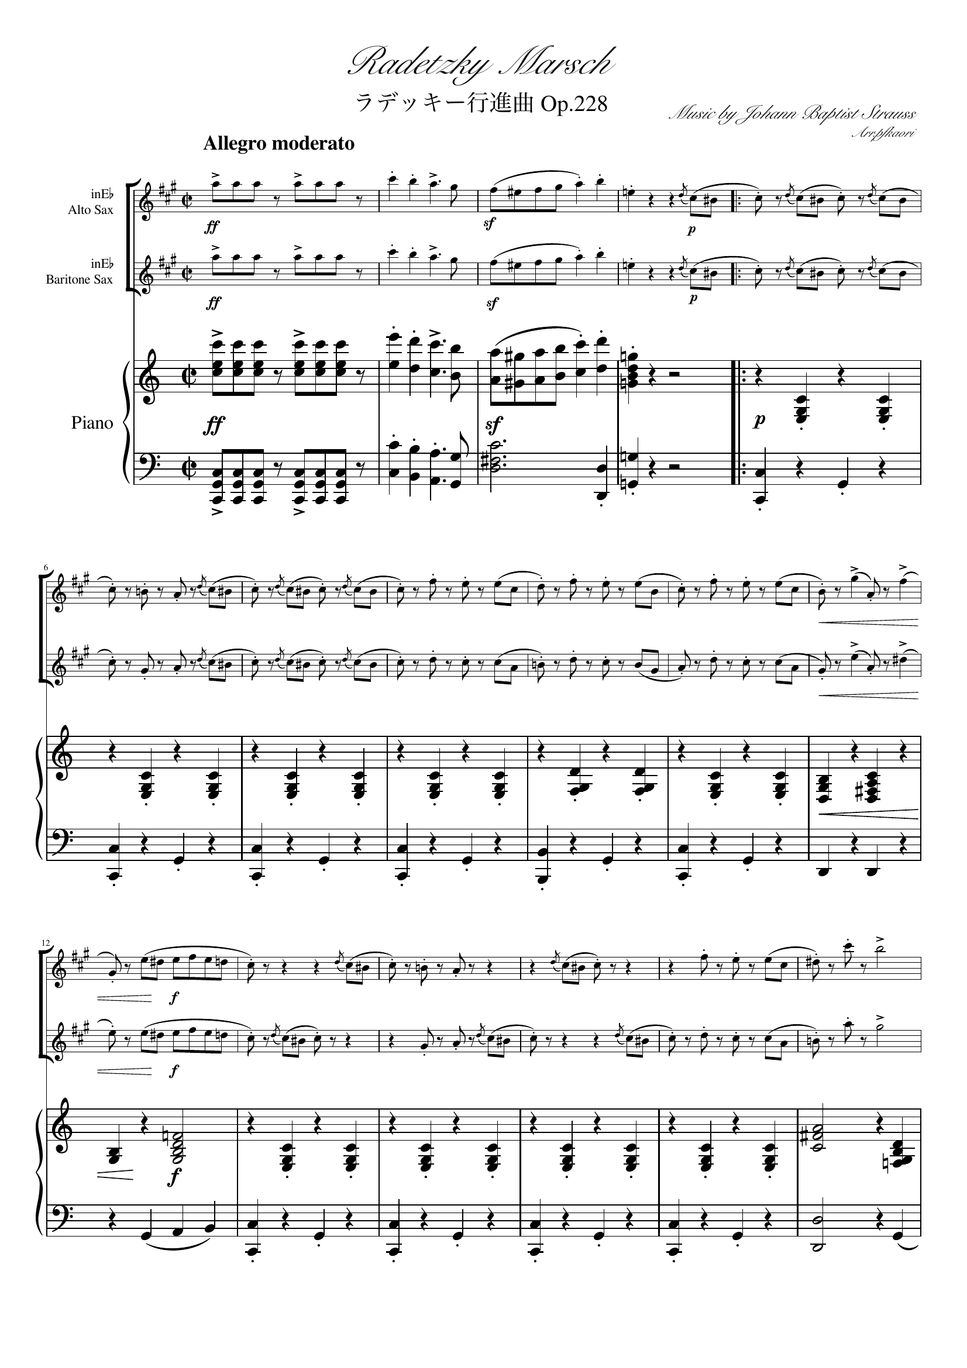 ヨハンシュトラウス1世 - ラデッキー行進曲 (C・ピアノトリオ/アルトサックス&バリトンサックス) by pfkaori